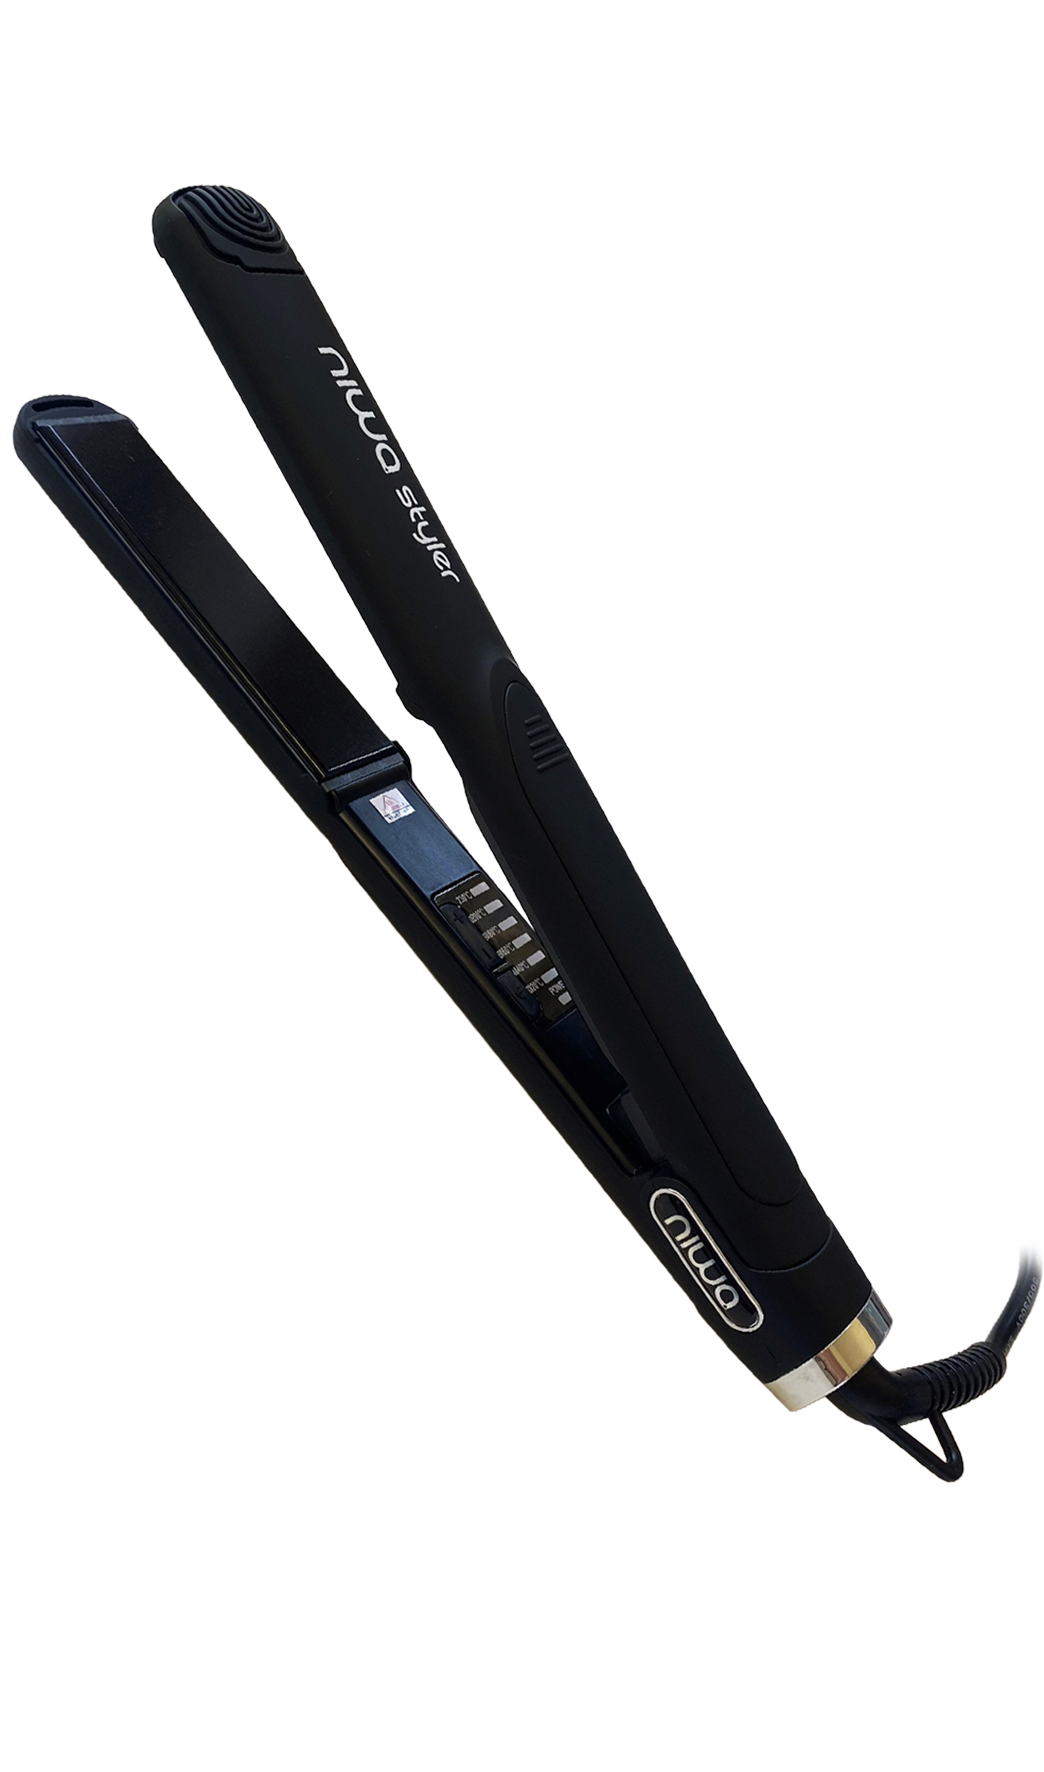 Le NIWA Styler Black: un outil de coiffage professionnel de qualité suisse. Il utilise la dernière technologie Nano-Céramique pour des cheveux lisses, brillants et sans frisottis. Sur keune.ch.